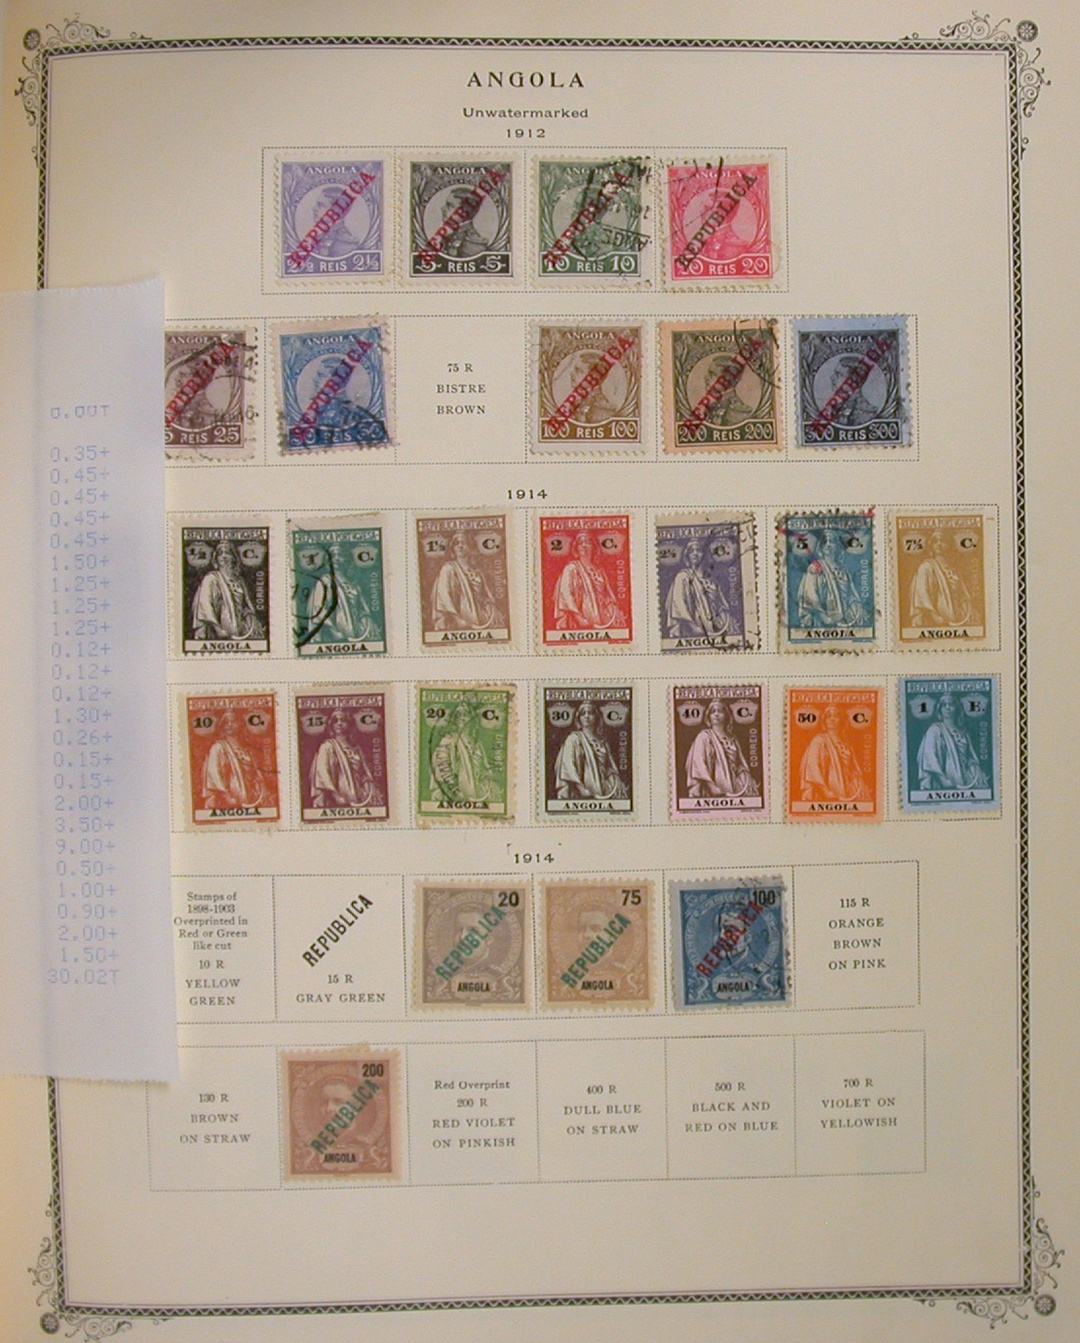 1970s era stamp album : r/stamps